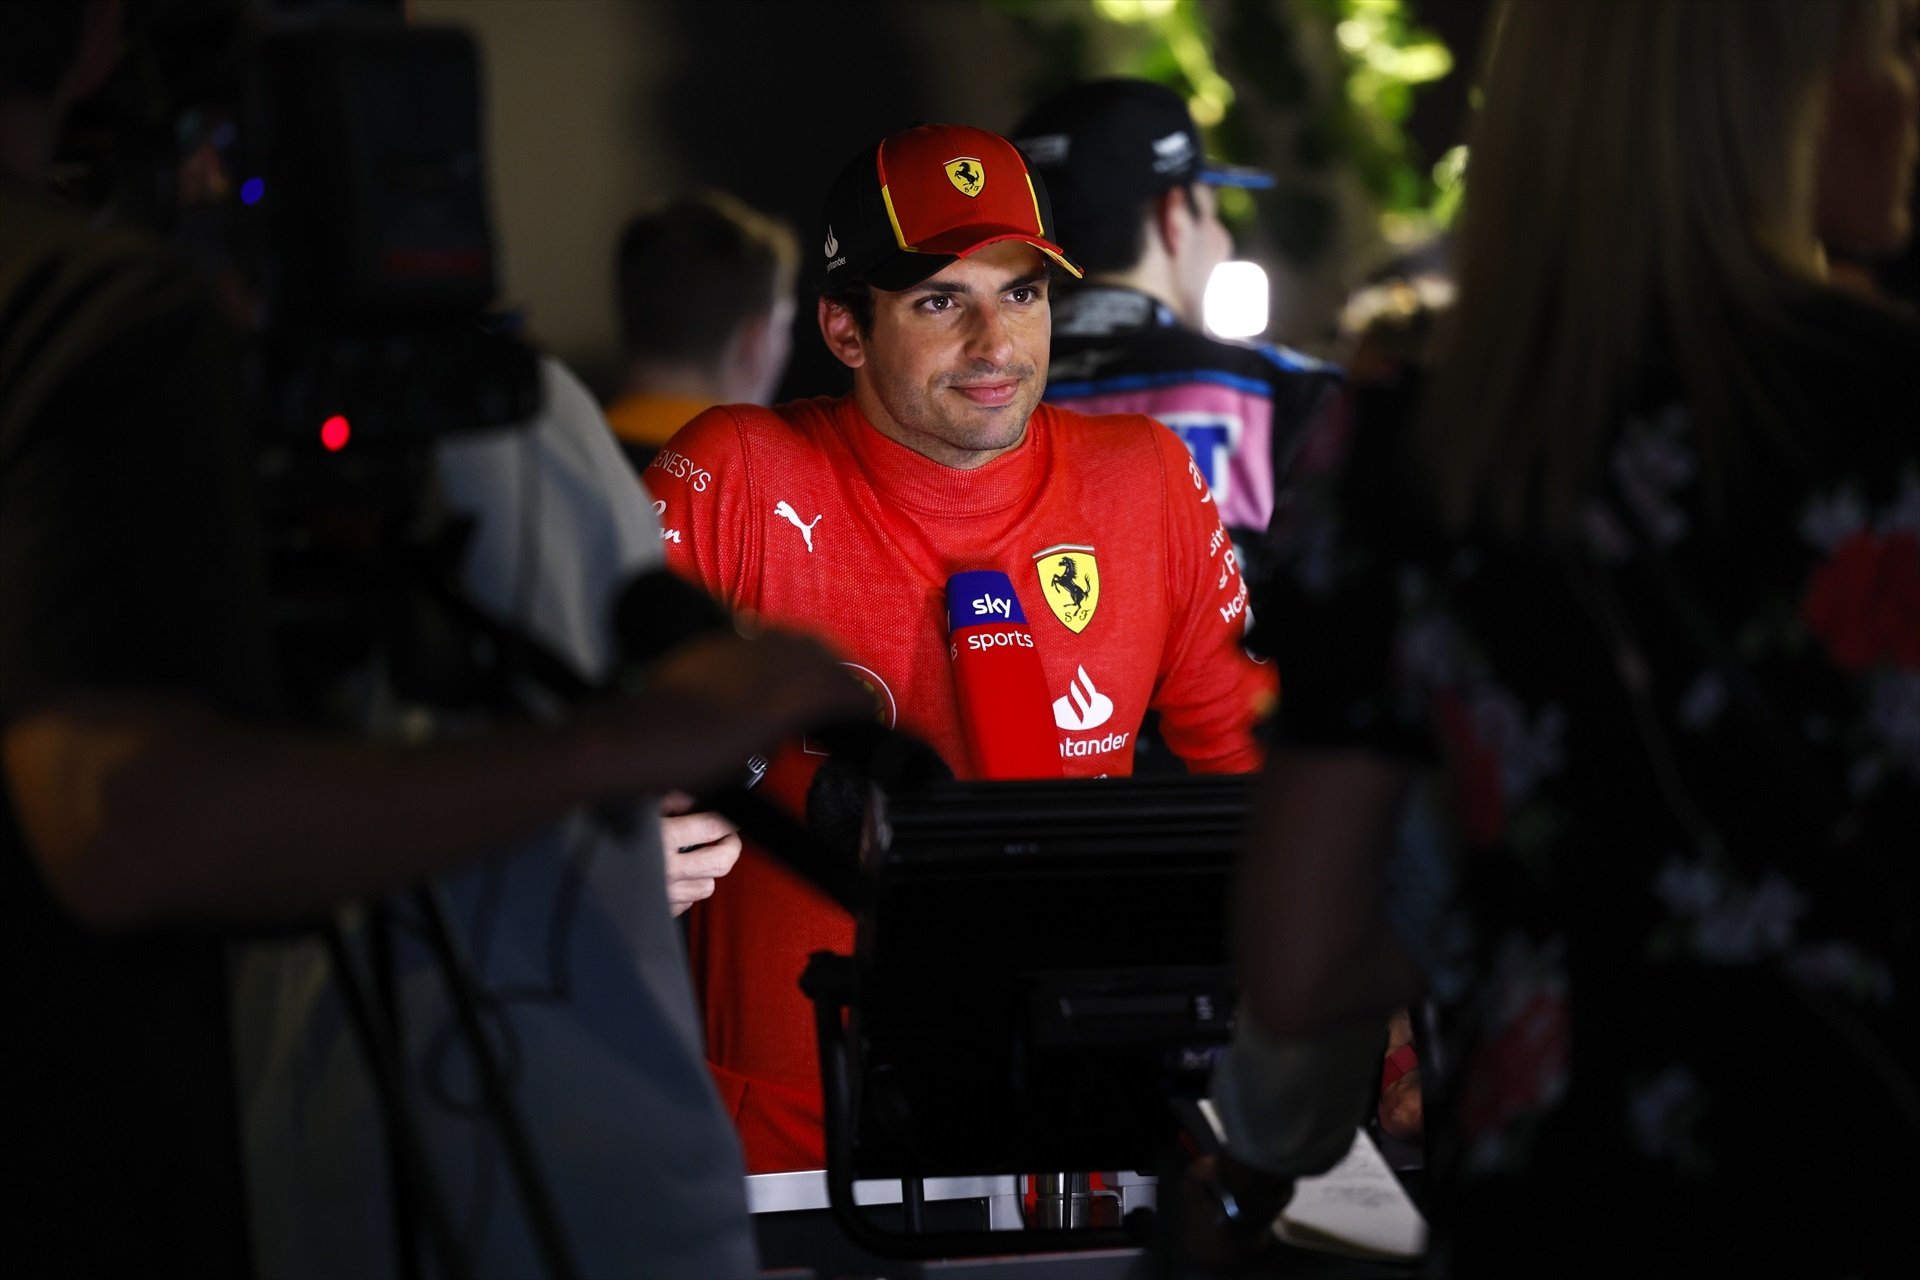 Carlos Sainz, soroll a Ferrari, contracte fins al 2024 amb clàusules 'mortals'